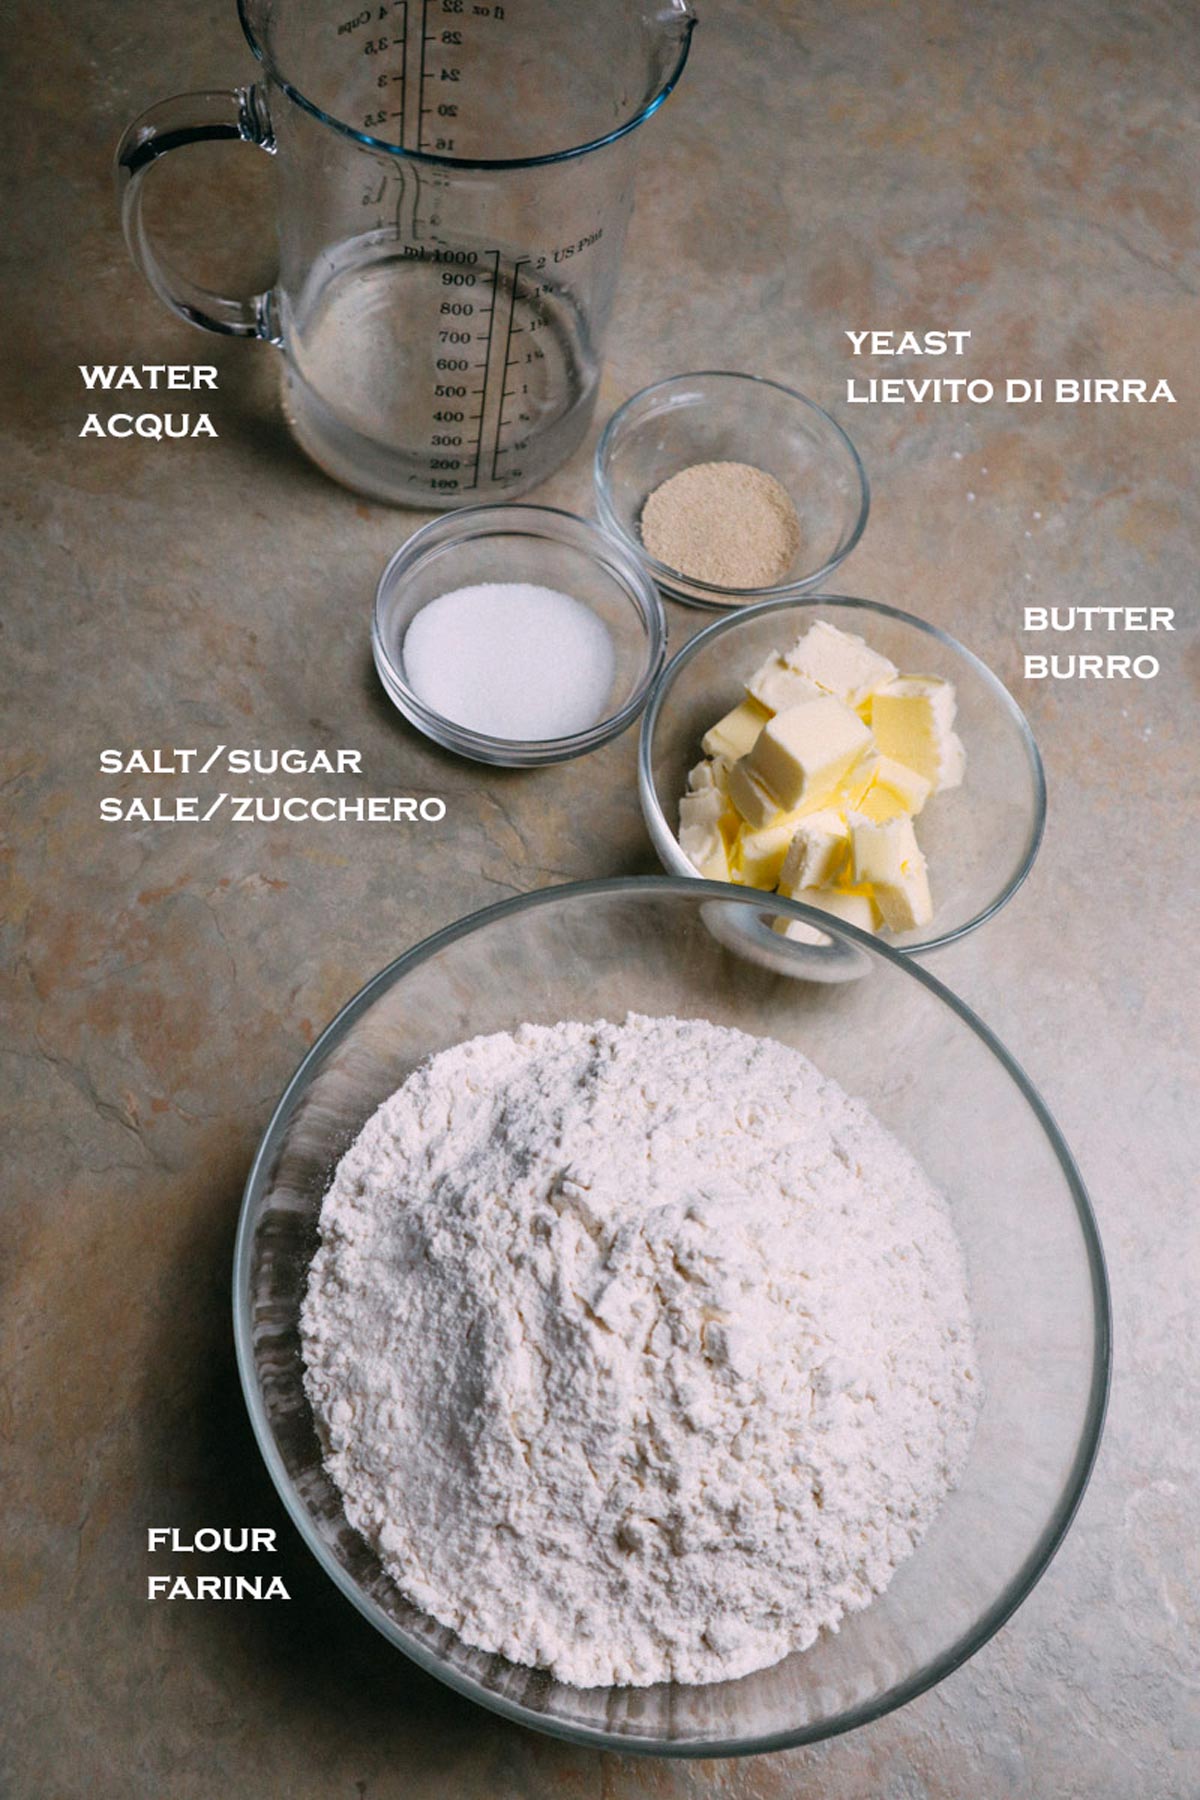 Ingredienti necessari per i cornetti salati di pasta brioche.